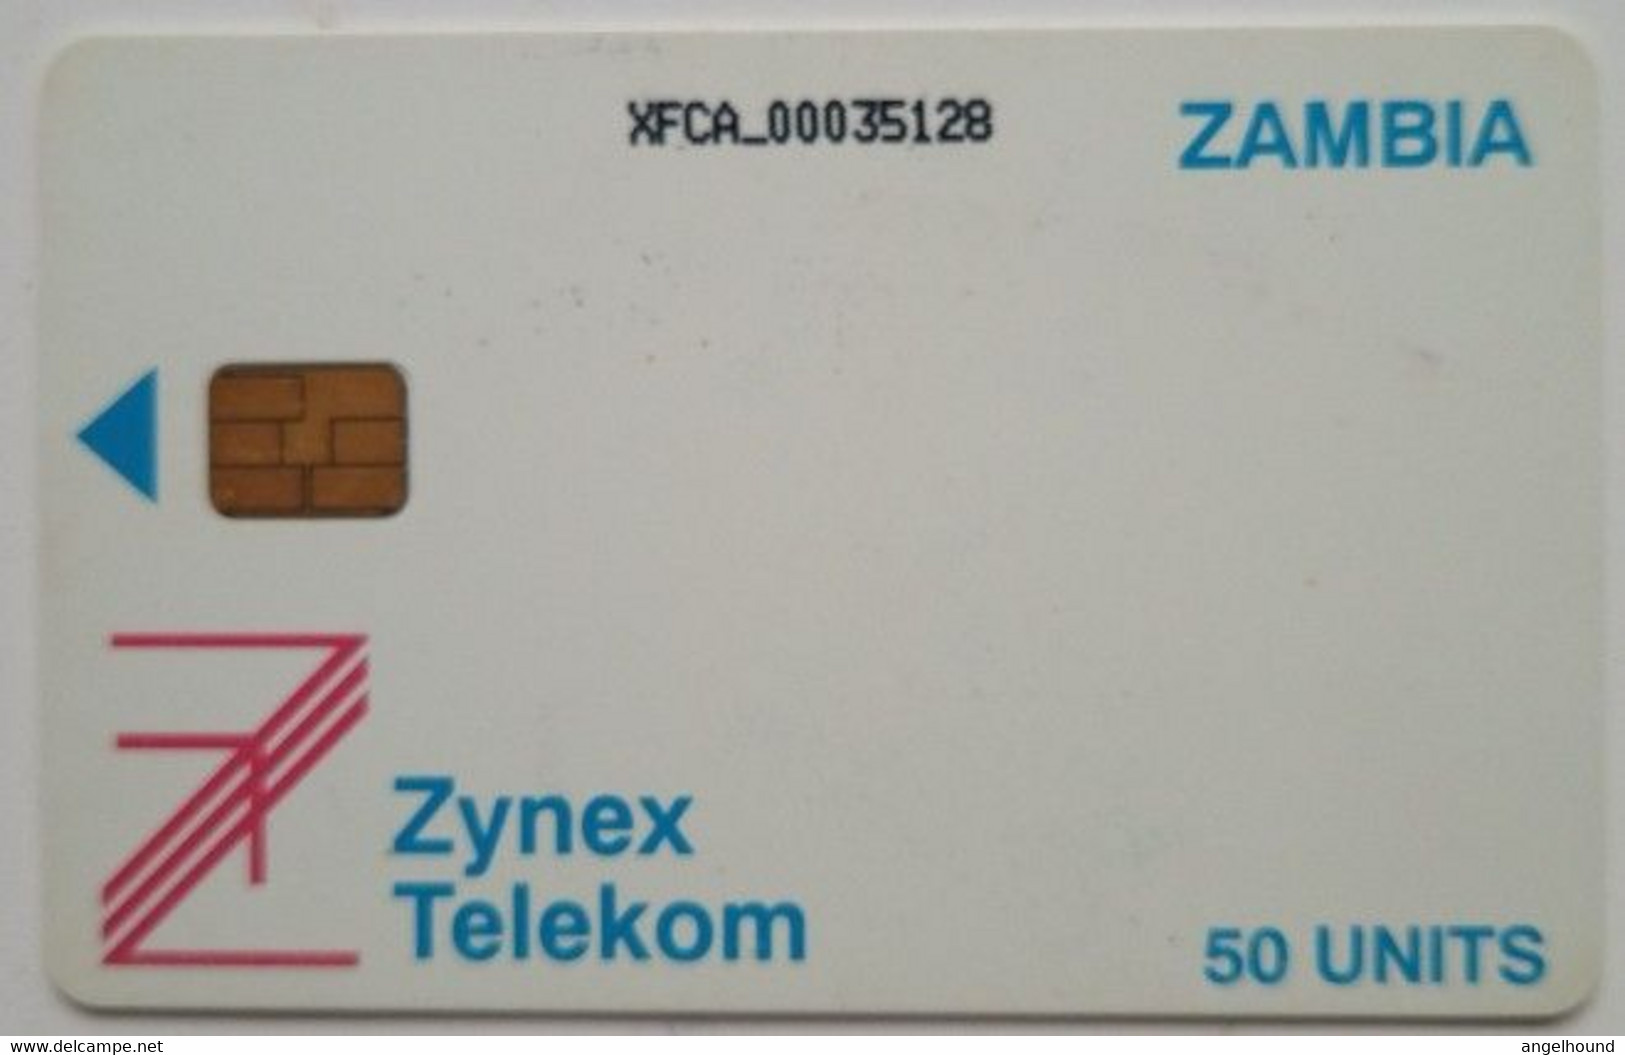 Zambia Zynex Telecom 50 Units - Sambia